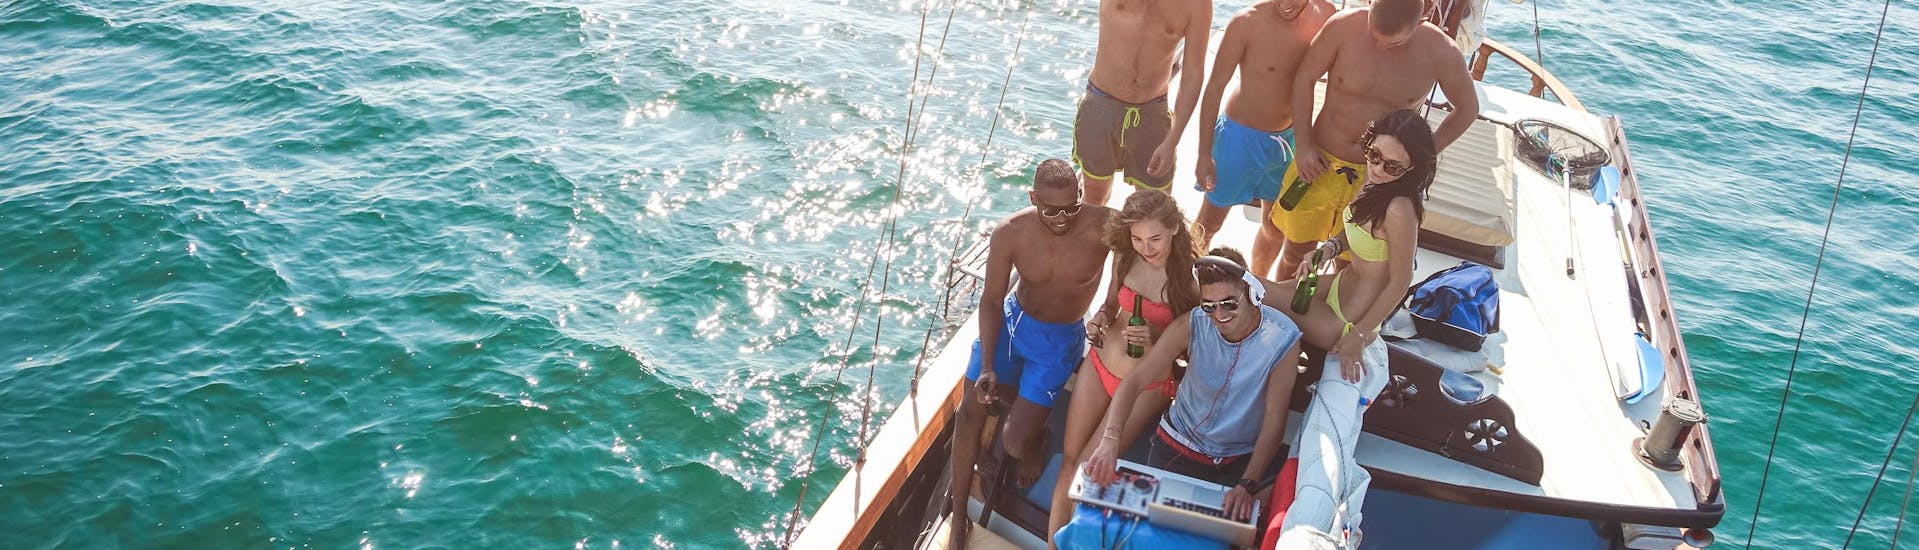 Un groupe d'amis profitant d'une excursion en bateau avec musique live et dj.